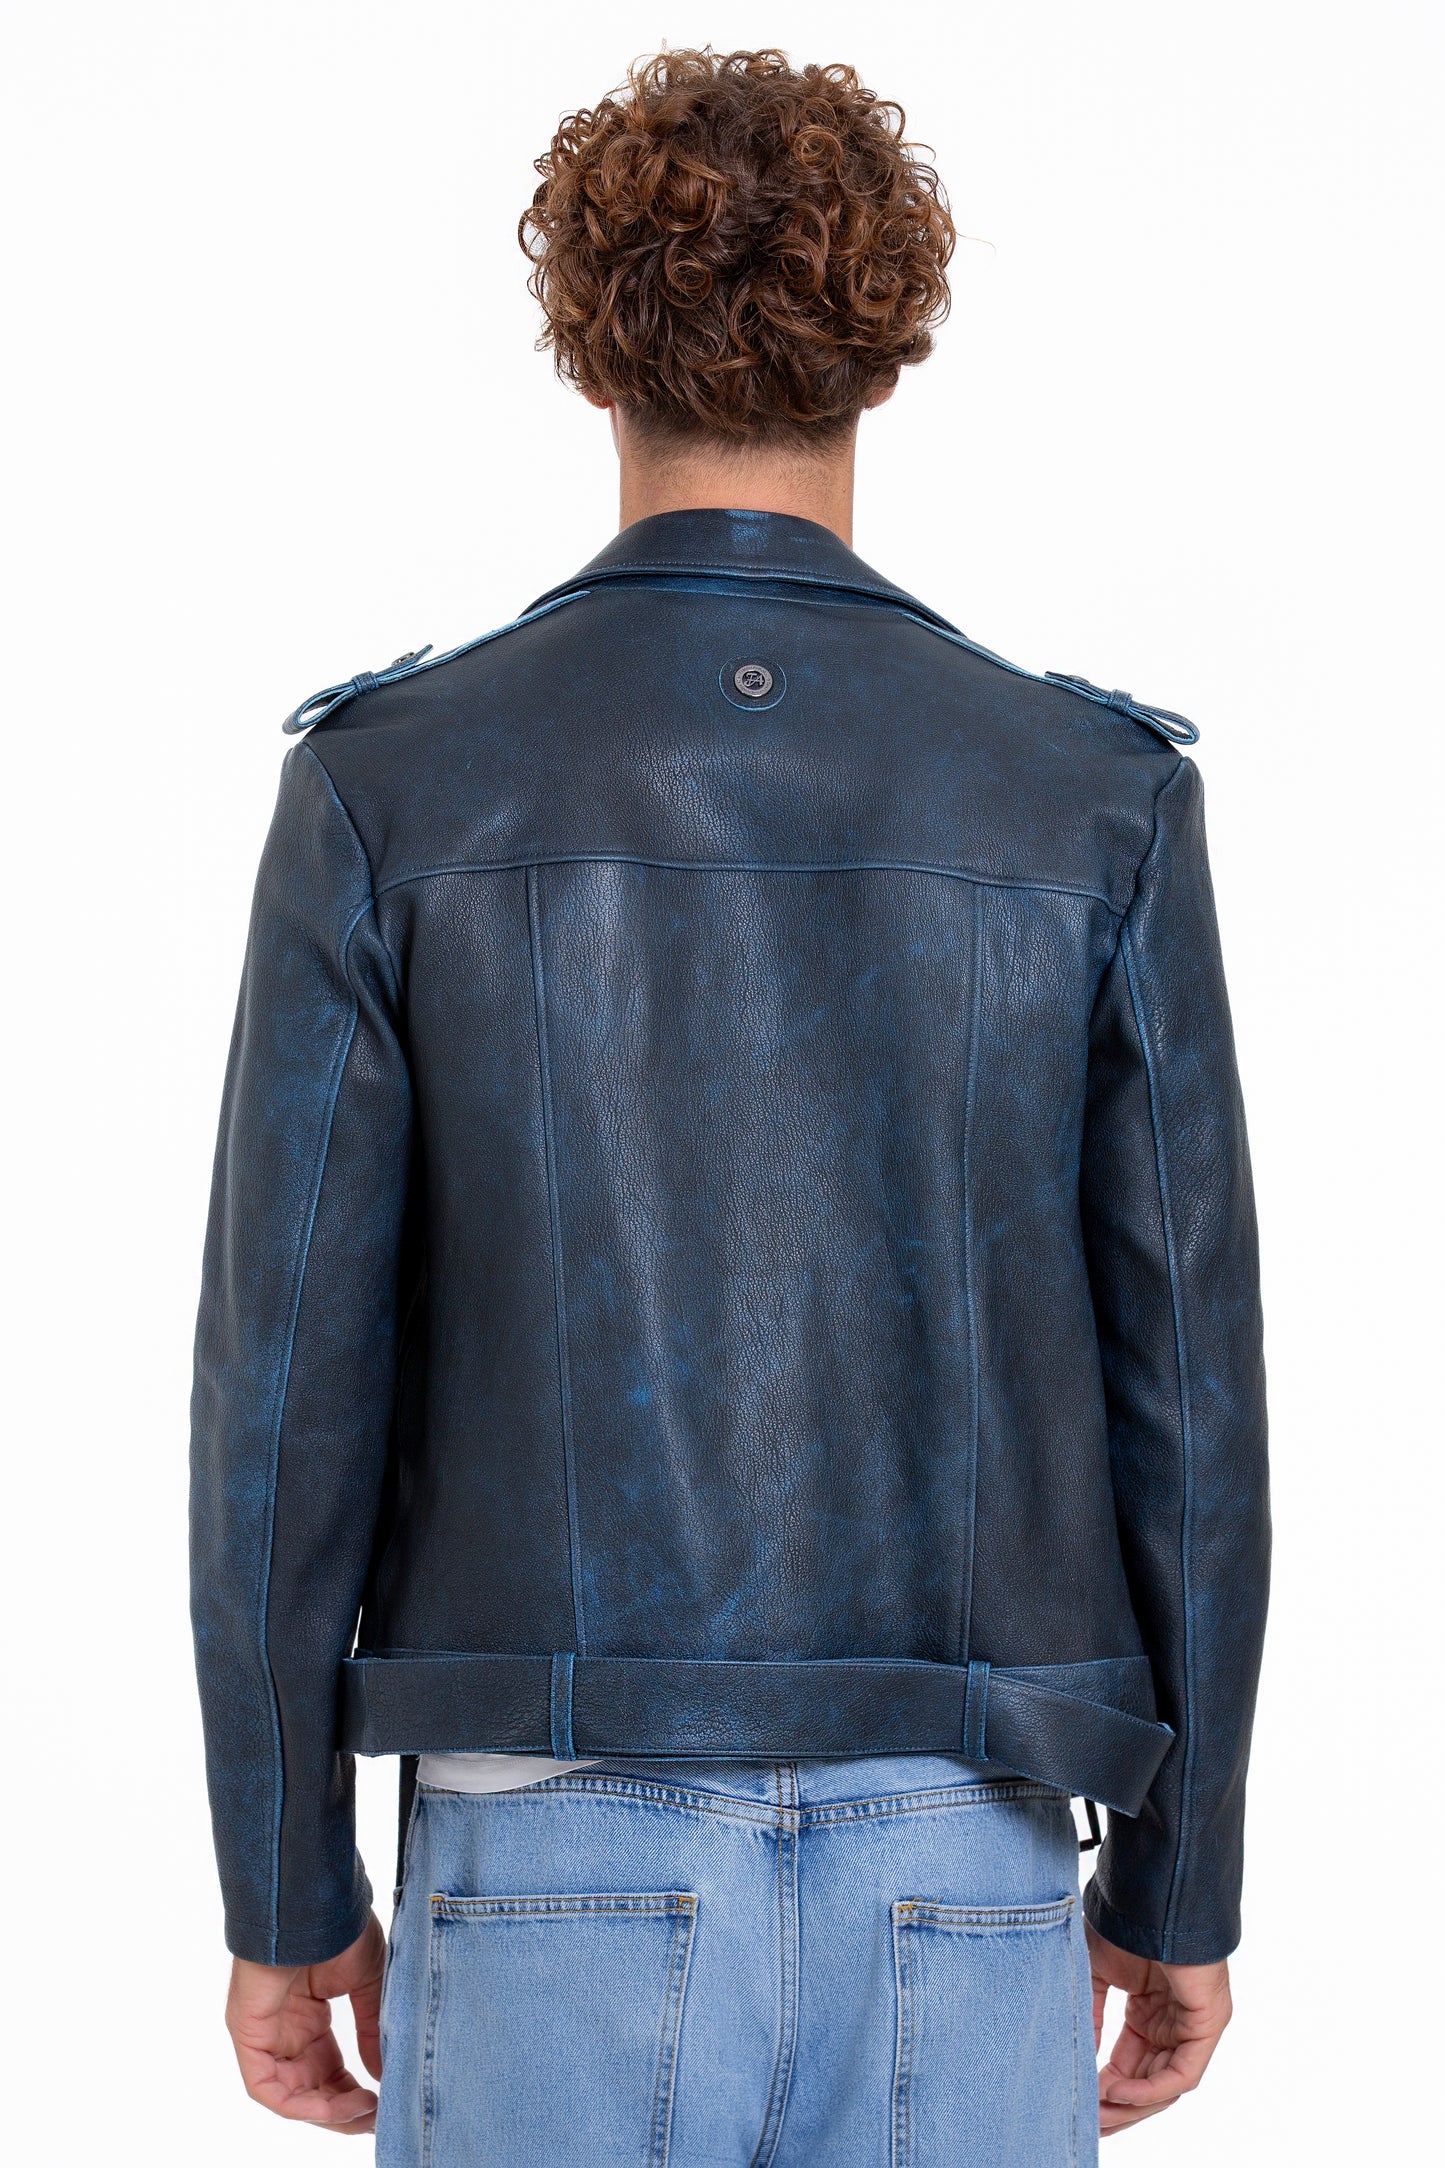 The Shanghai Blue Aged Leather Biker Men Jacket